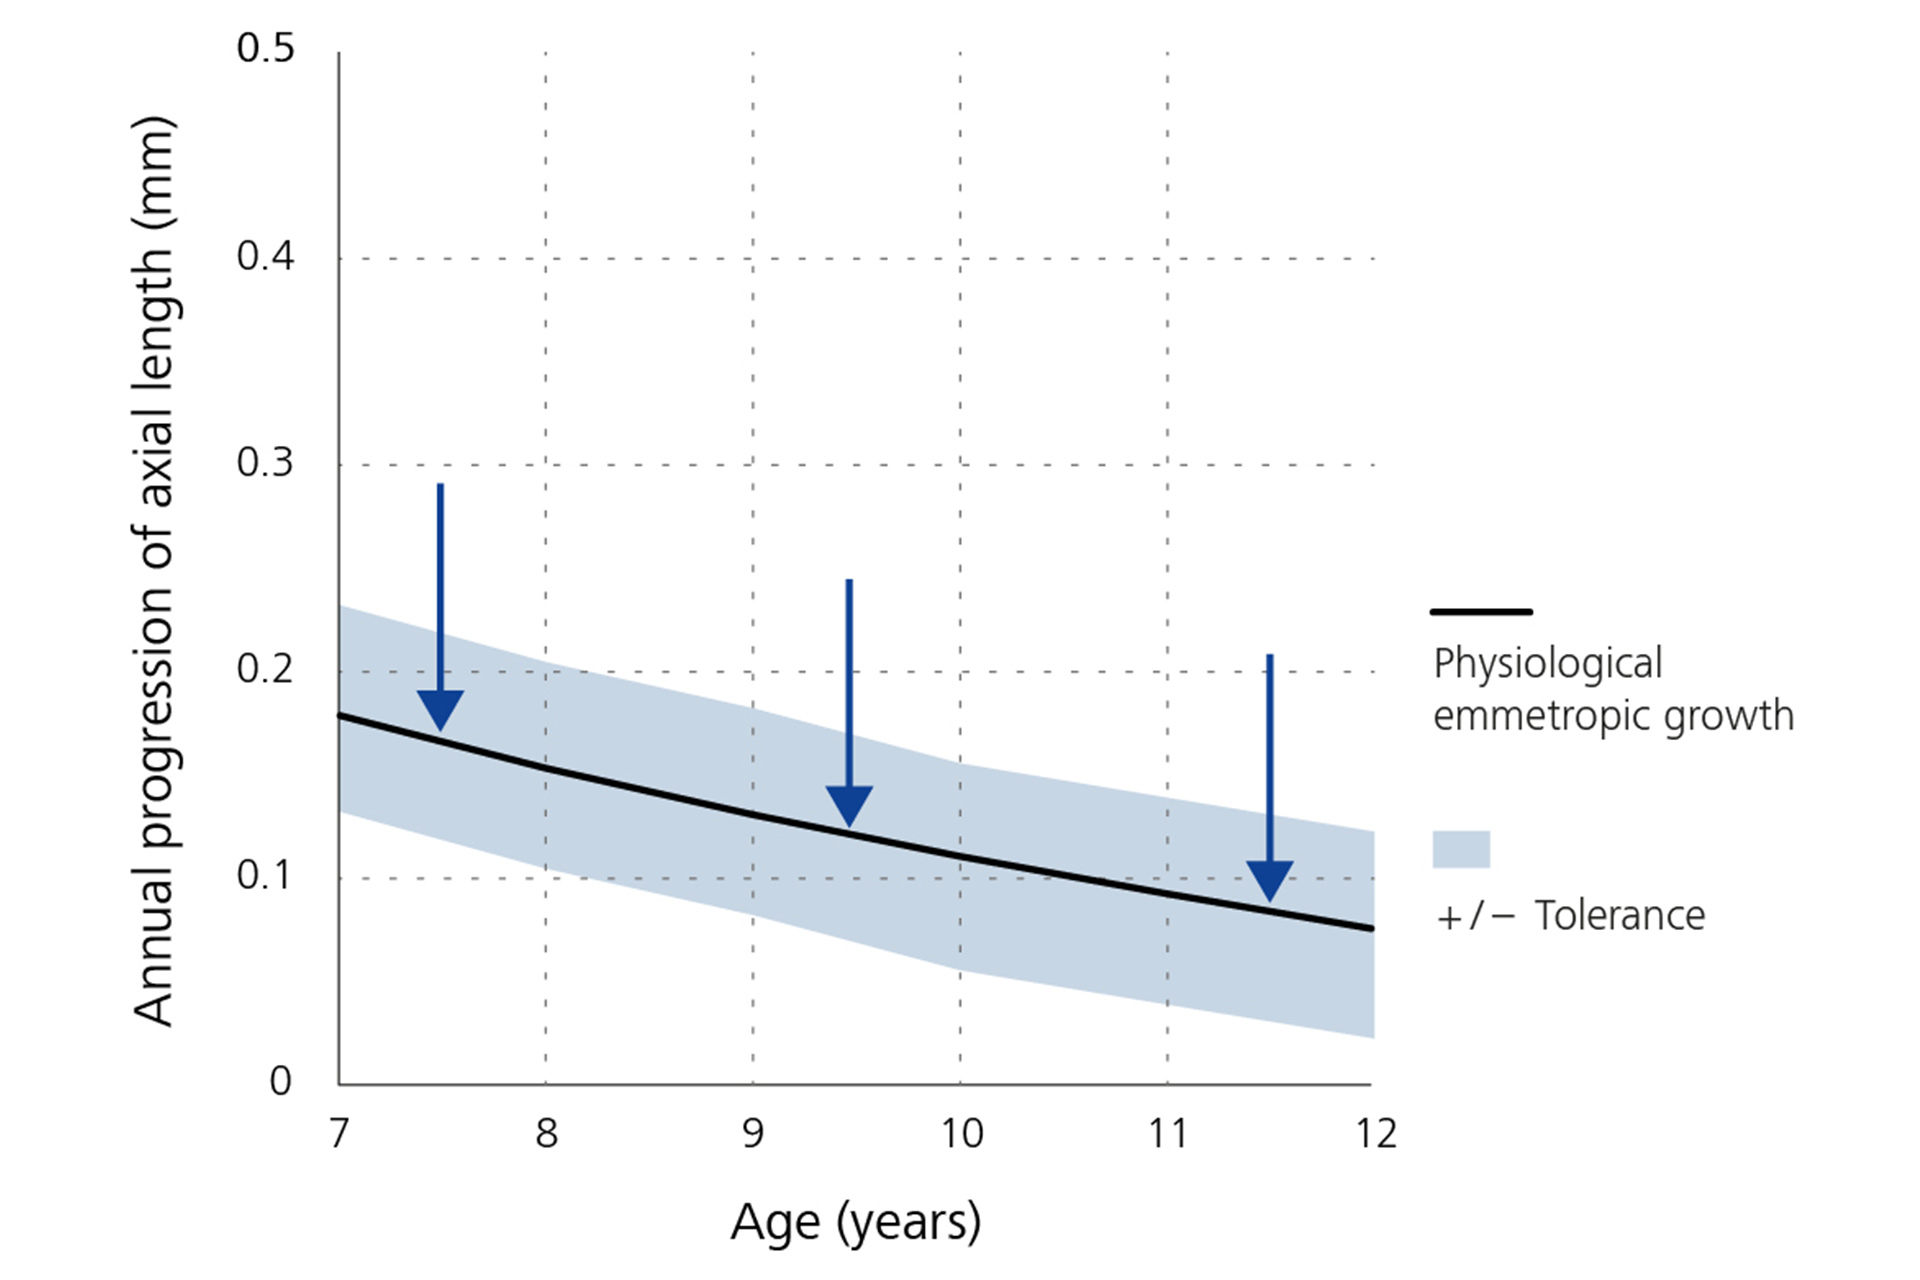 Een lijngrafiek die de jaarlijkse afname van de progressie van de axiale lengte - basislijn per leeftijd laat zien.